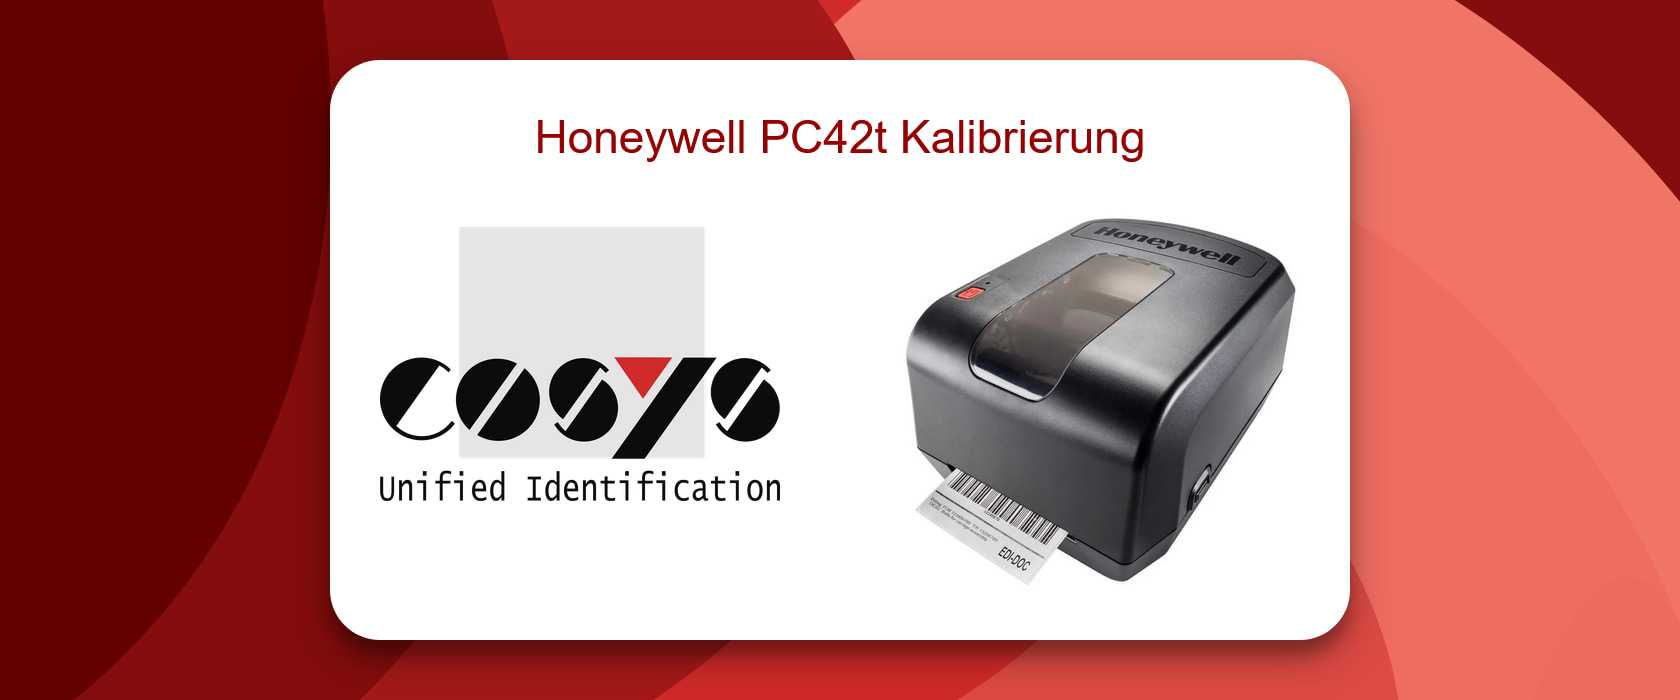 Kalibrierung des Honeywell PC42t